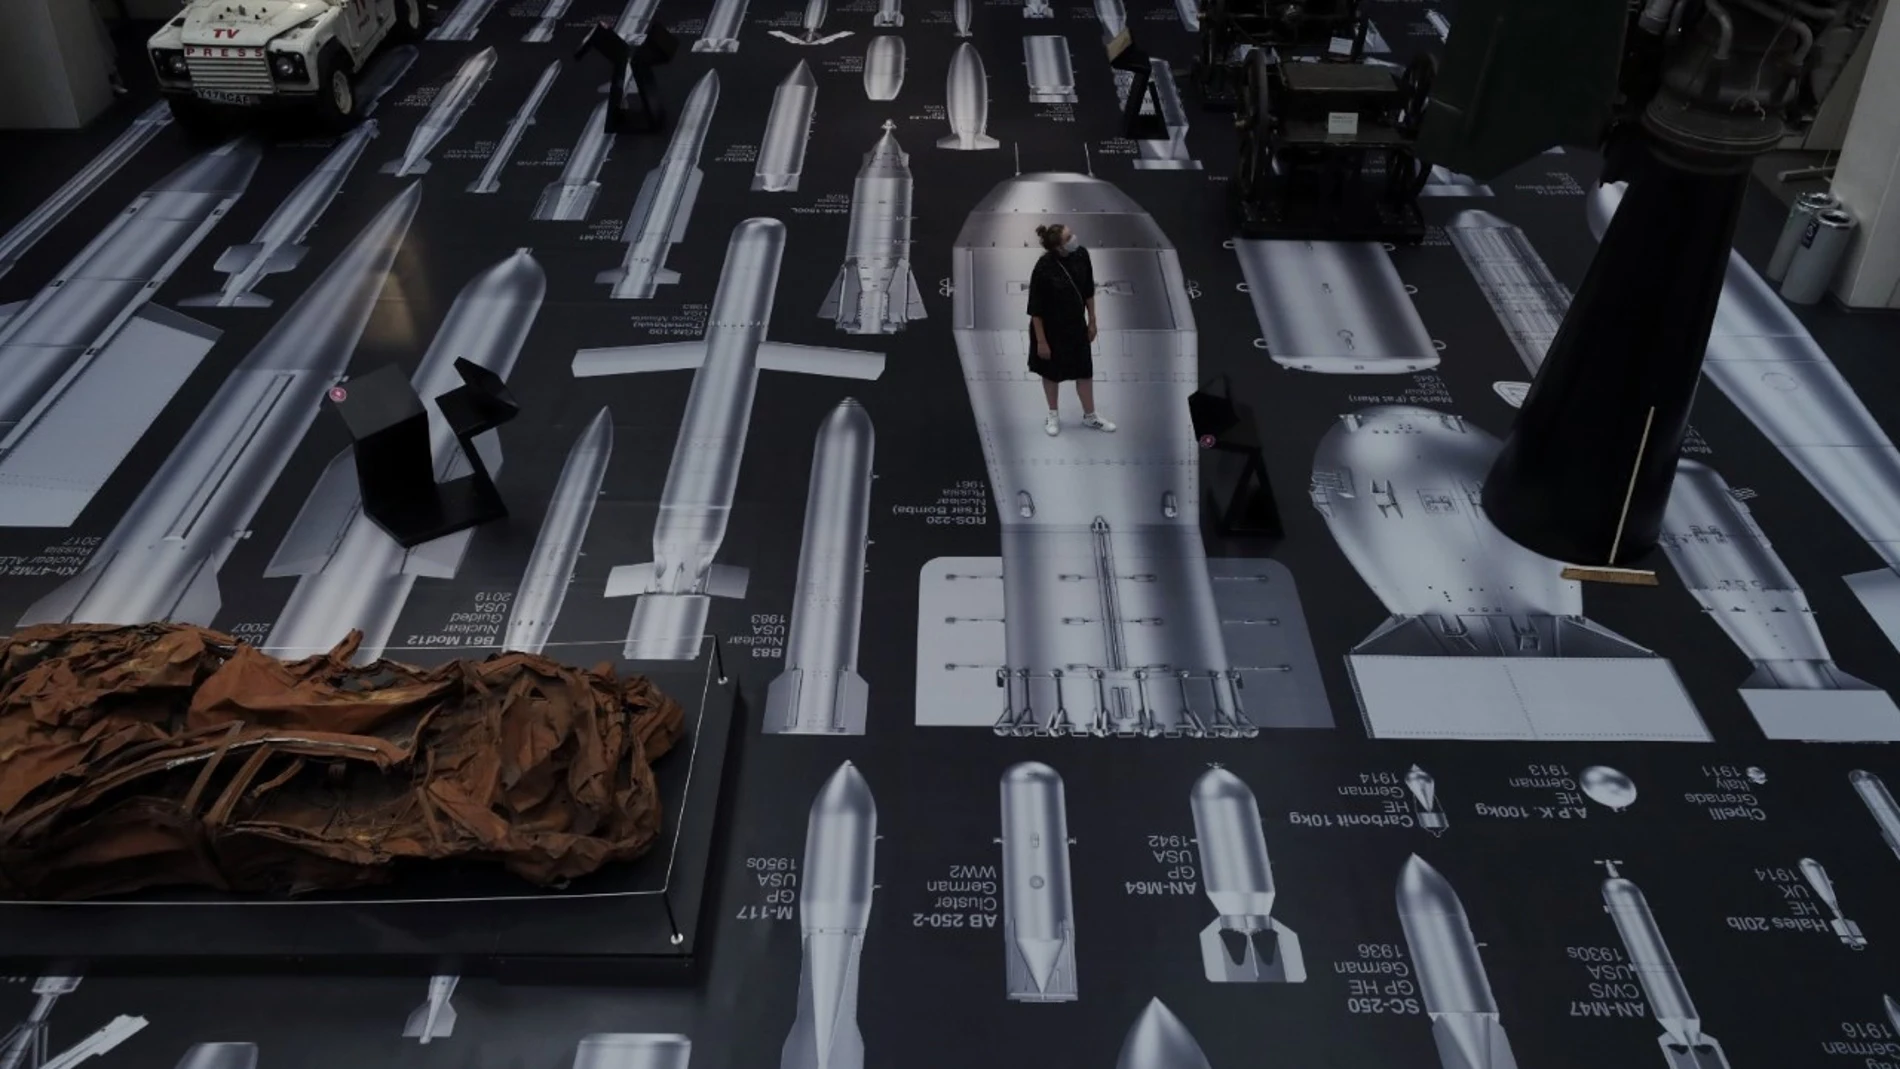 Una mujer en la obra del artista chino Ai Weiwei, "Historia de las bombas", en el Museo de la Guerra de Londres